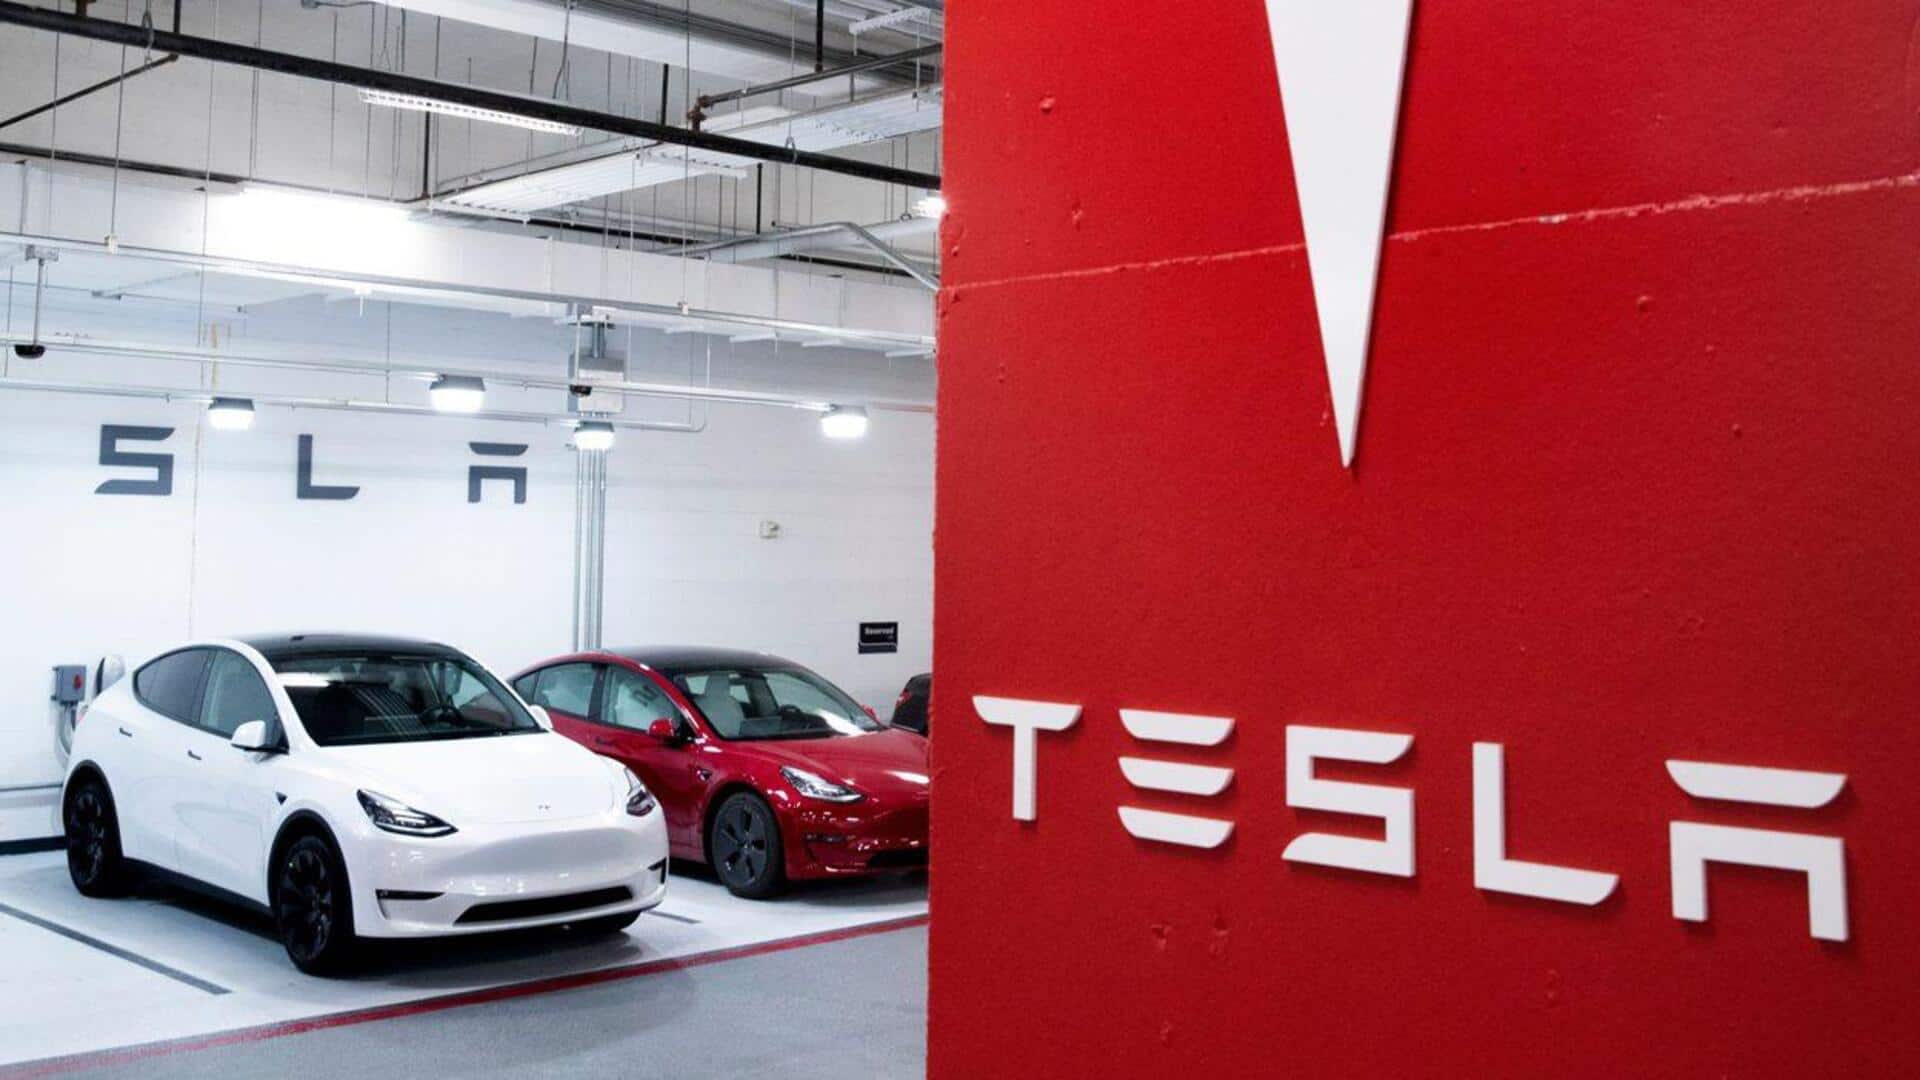 Tesla eyes $3.6 billion Indian market revenue by 2030